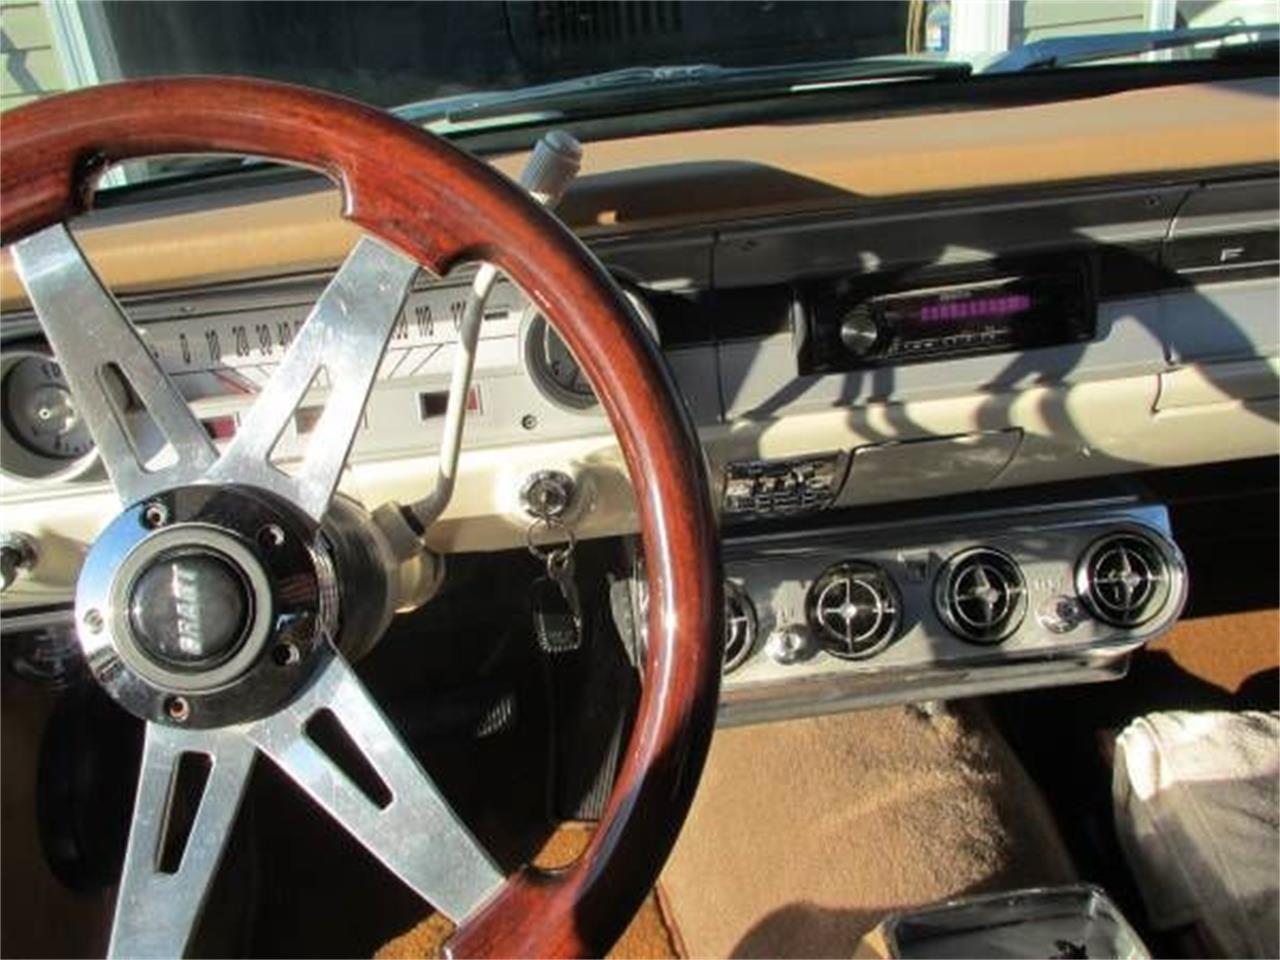 1964 Ford Falcon for sale in Cadillac, MI